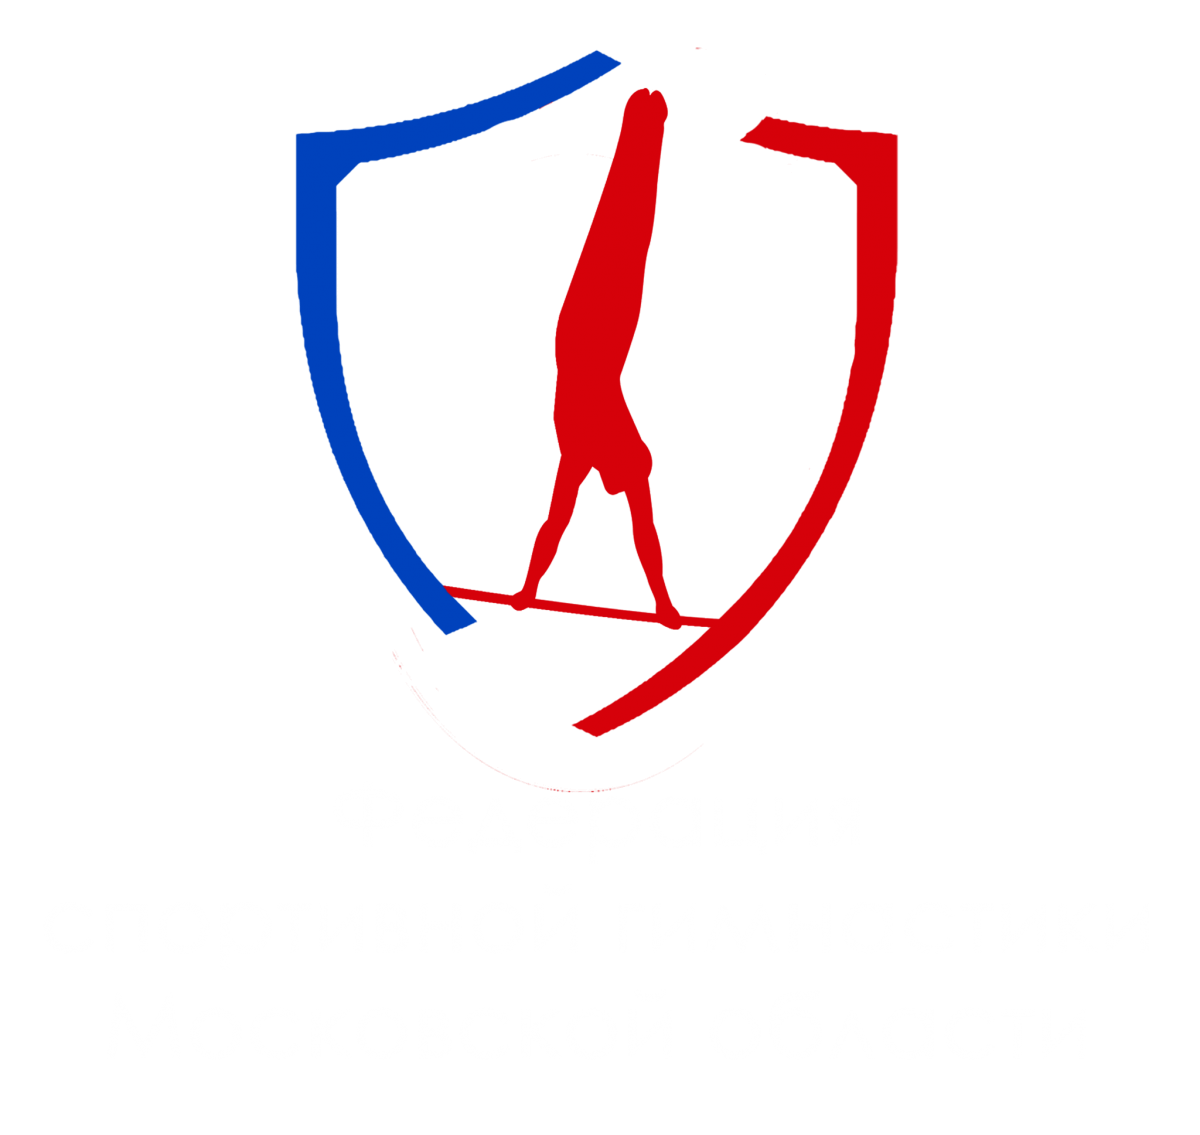 Федерация спортивной гимнастики лого